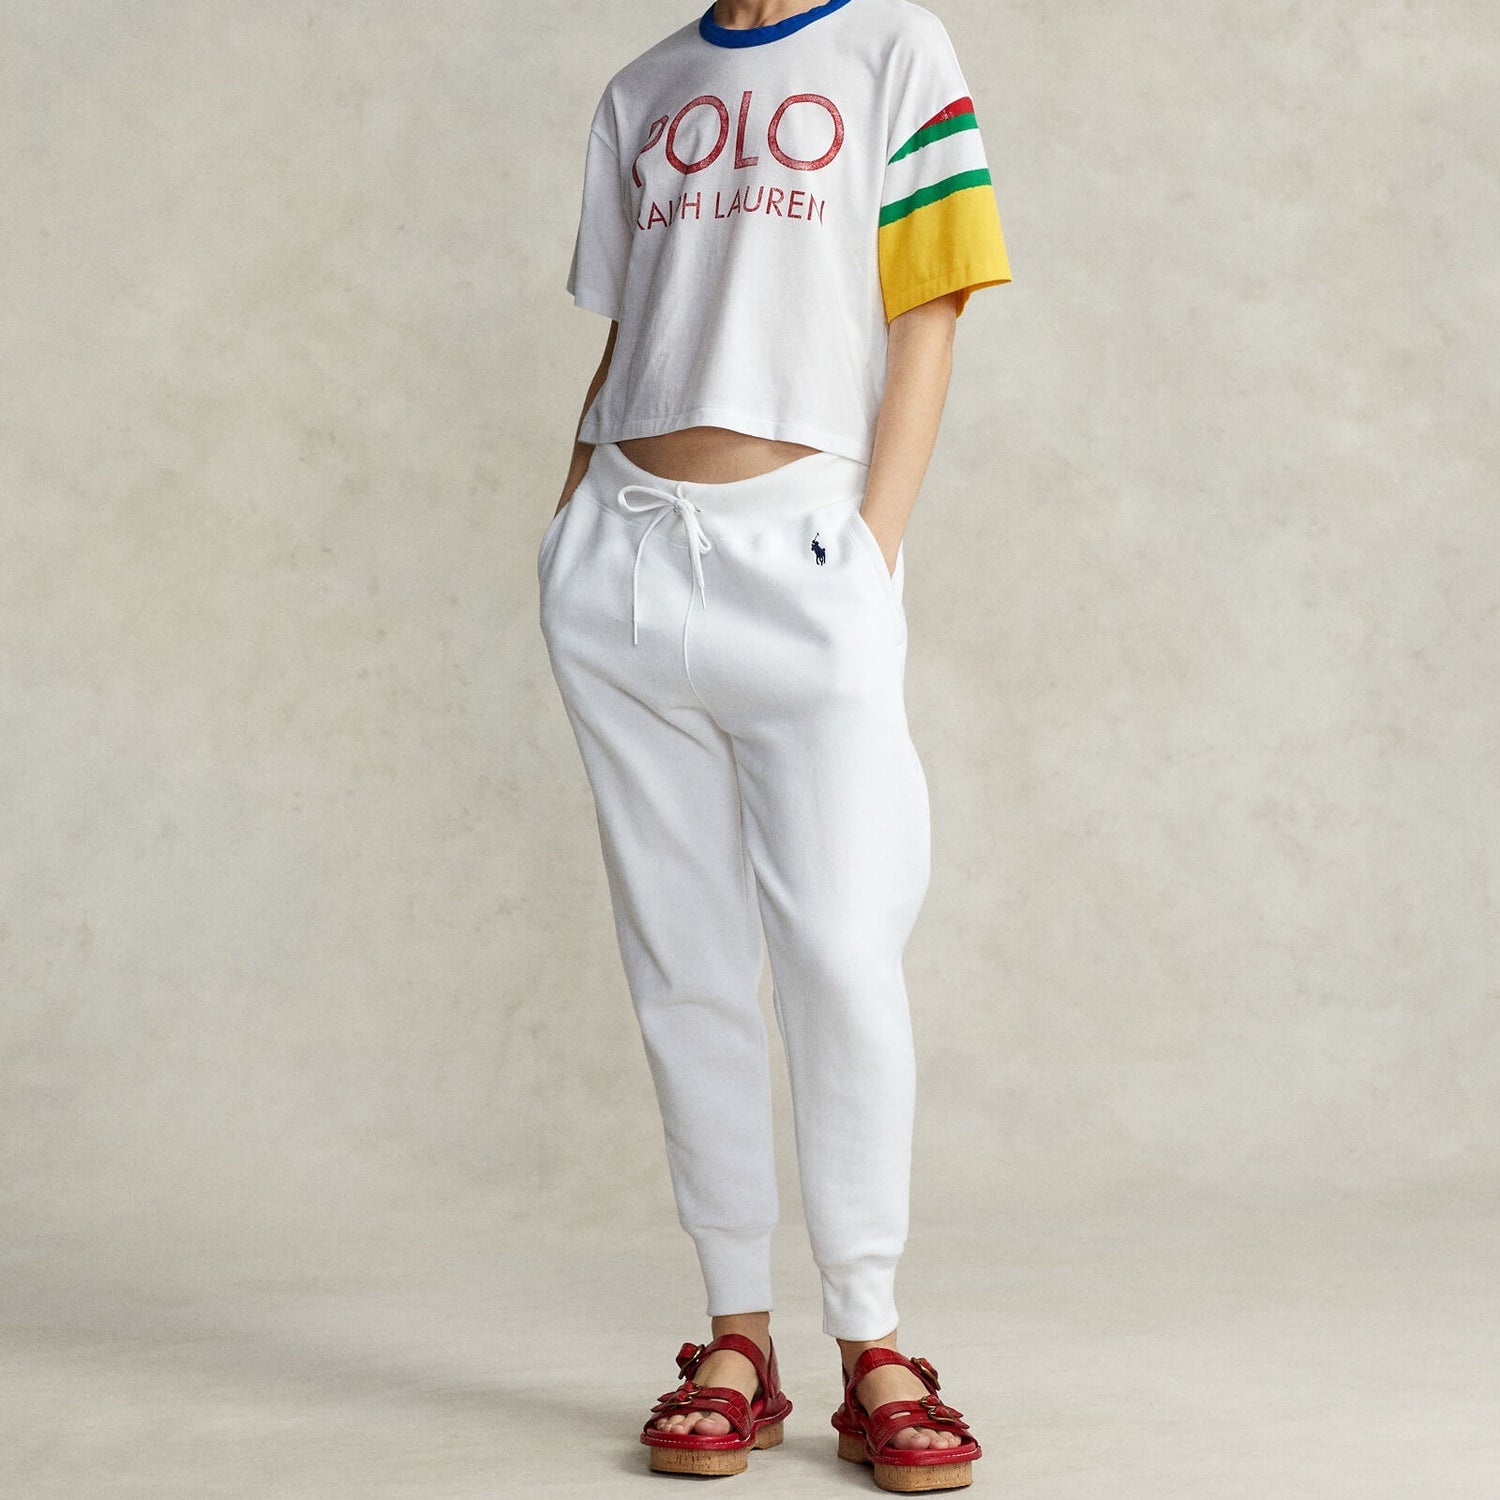 Polo Ralph Lauren Women's Ng Crp T-Short Sleeve-T-Shirt - White - XS